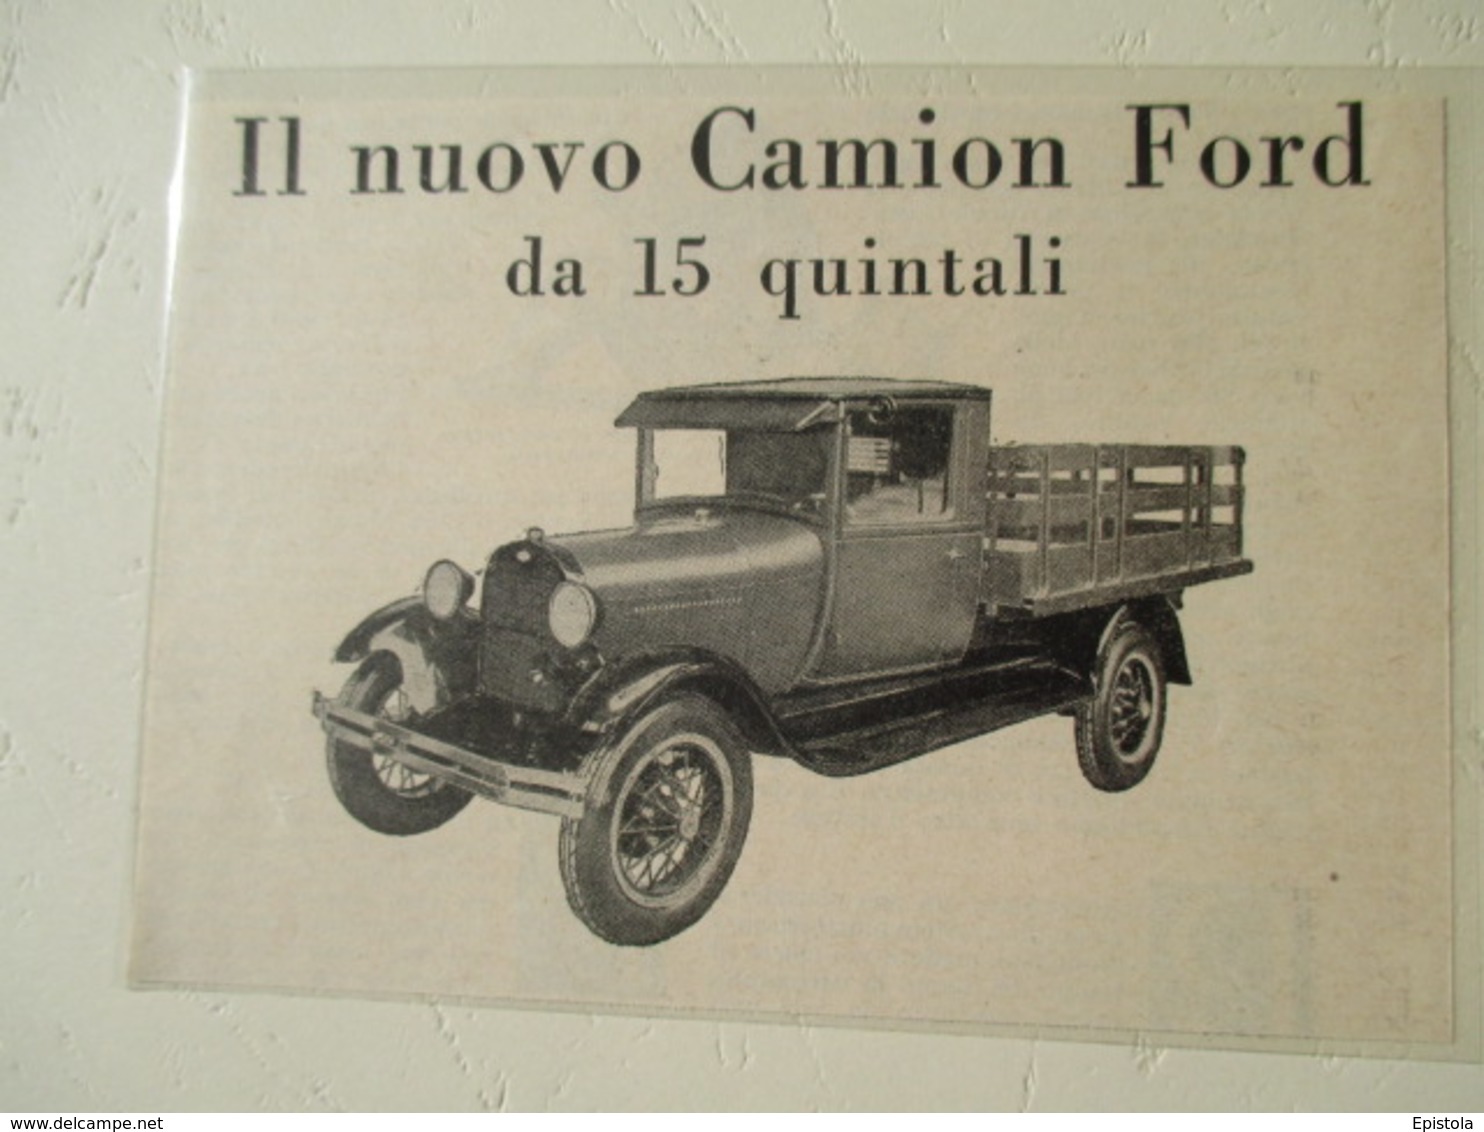 Transport Utilitaire - Camion Pick Up FORD  - Coupure De Presse De 1927 - Camions